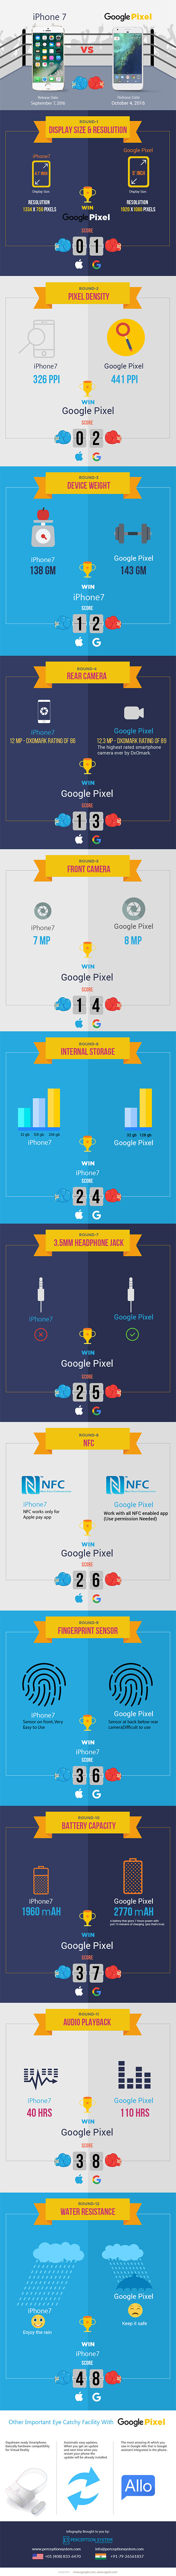 infographic-iphone-7-vs-google-phone